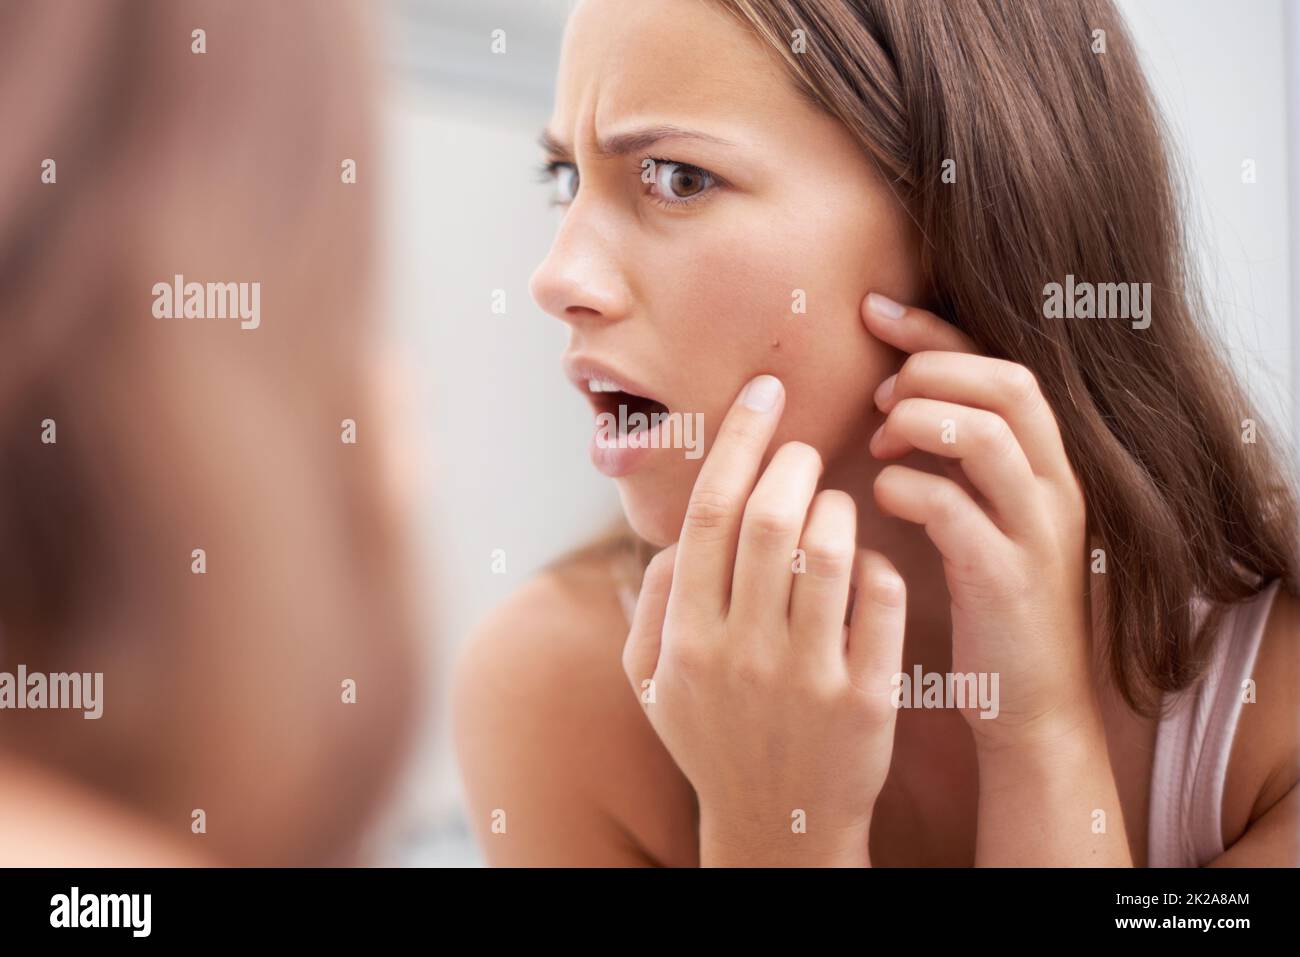 Was Für Ein Pickel. Eine junge Frau, die schockiert aussieht, als sie ihre Haut untersucht. Stockfoto